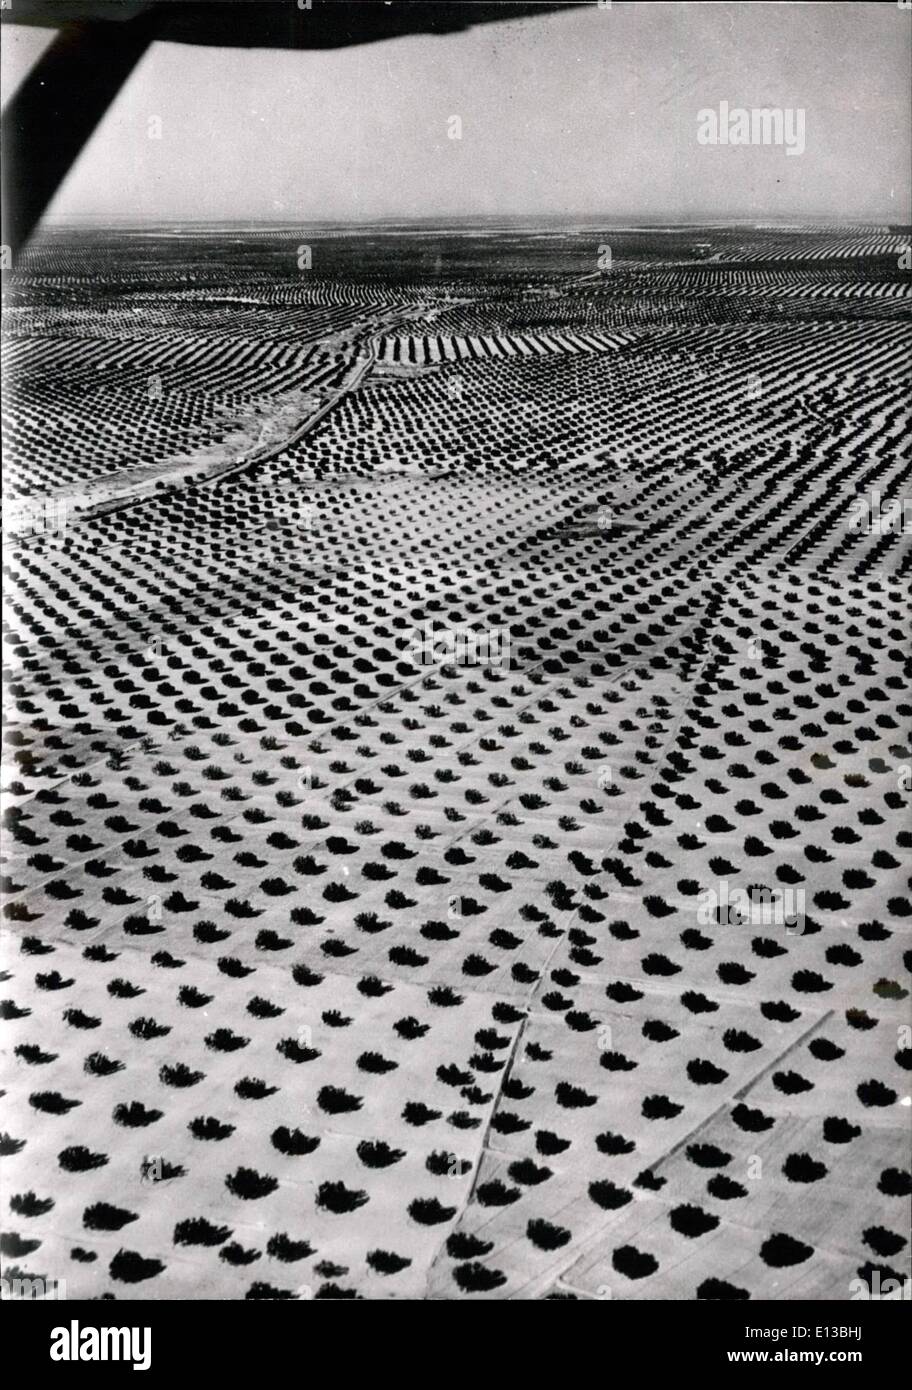 29 février, 2012 - 26 millions d'oliviers plantés en désert. Une vue de l'immense plantation d'oliviers, dans un désert tunisien. 45 La nouvelle plantation devrait produire 45.000 tonnes d'huile d'olive par an. 18/55 août Banque D'Images